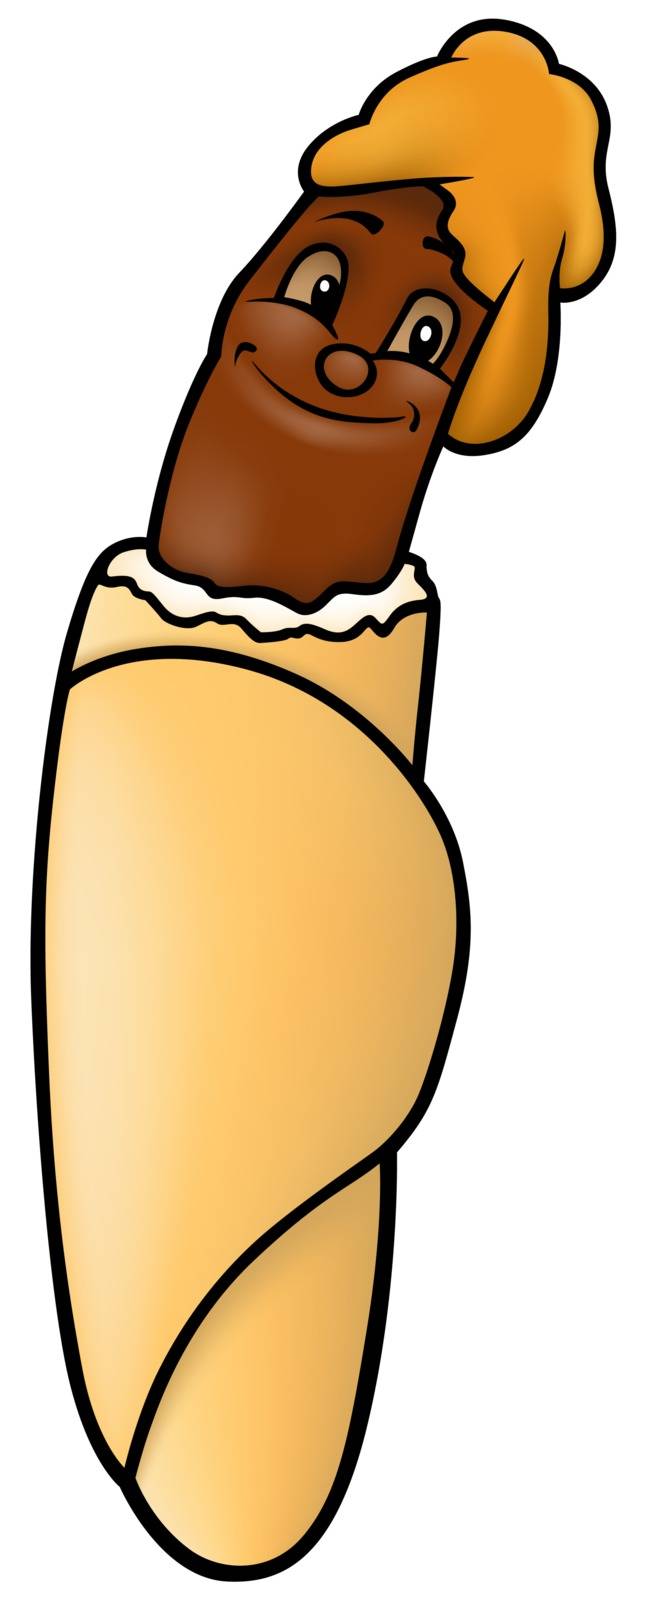 Hot Dog by illustratorCZ